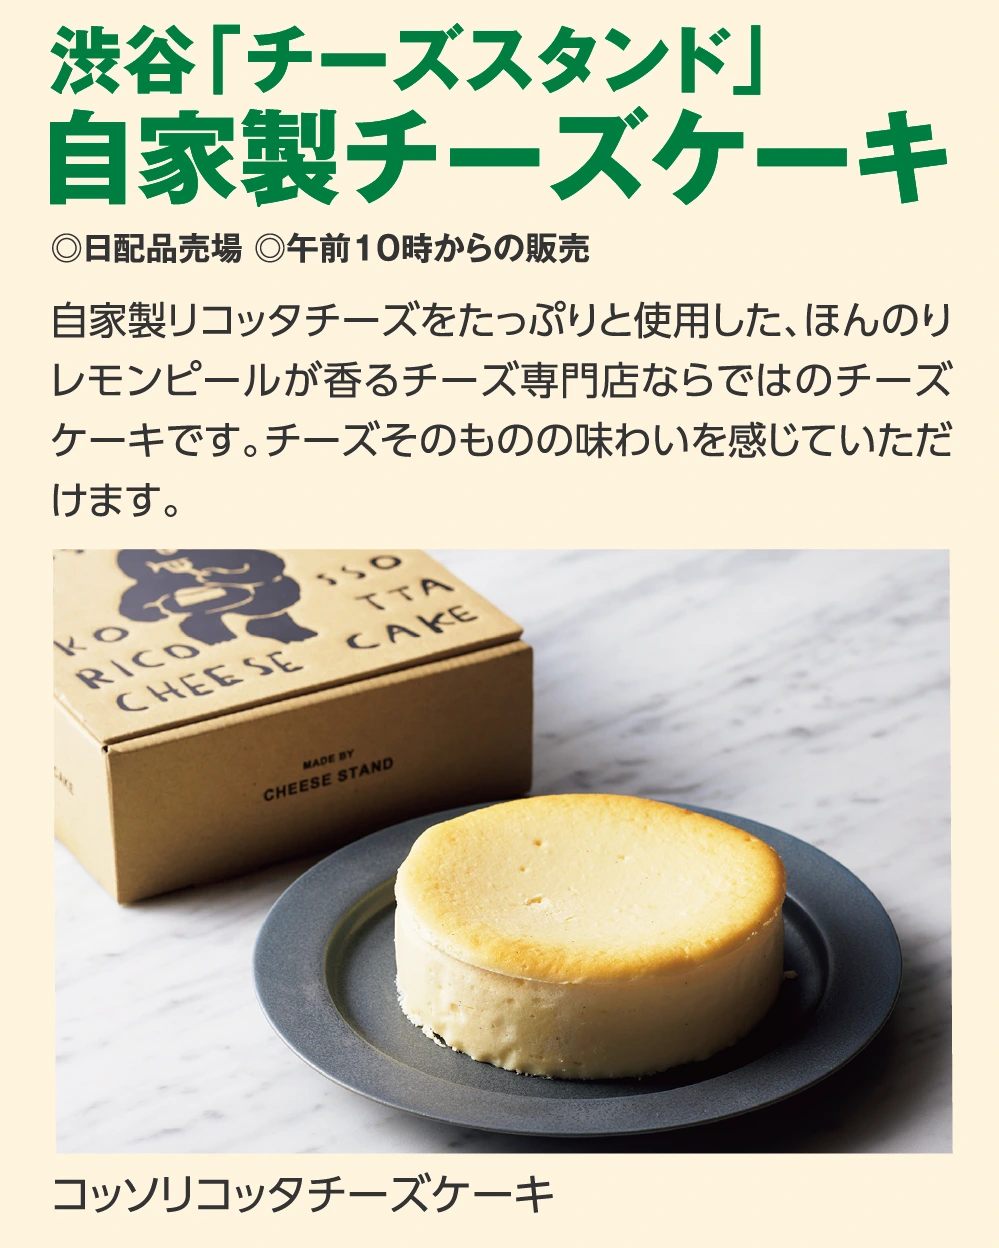 渋谷「チーズスタンド」
					自家製チーズケーキ